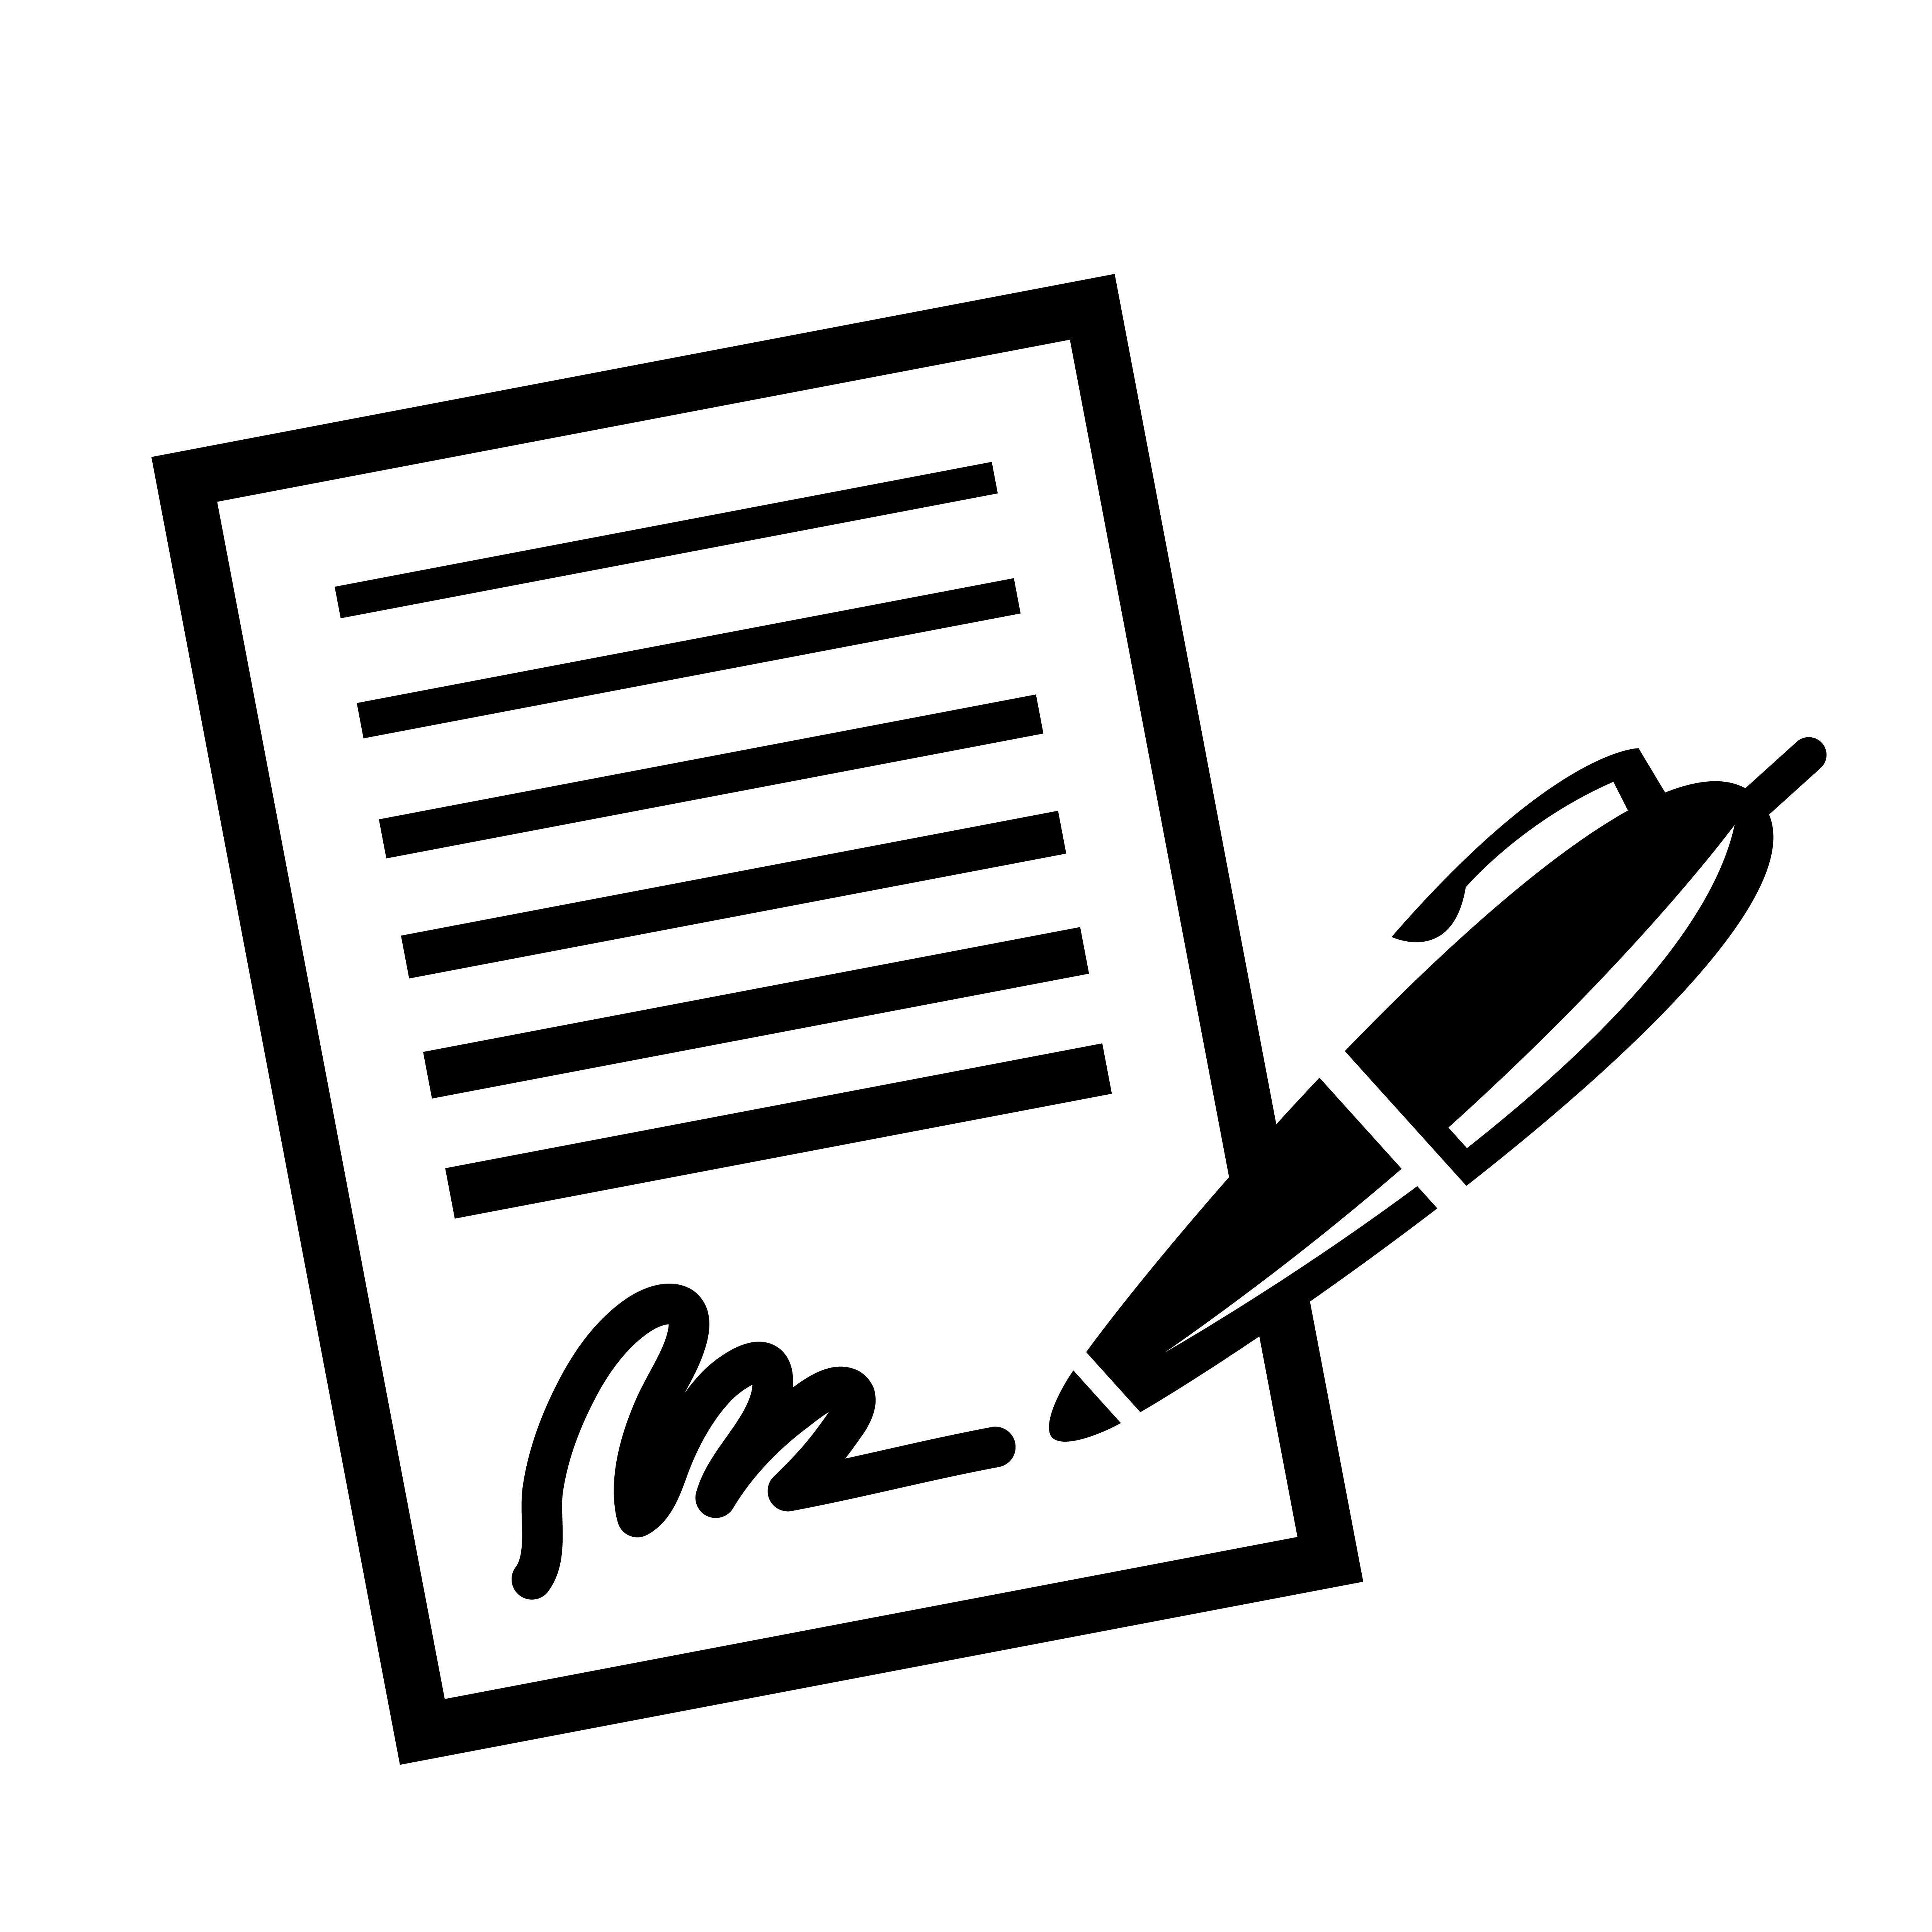 Подписать картинку. Договор рисунок. Иконка подпись документа. Значок документ с ручкой. Ручка и документ без фона.